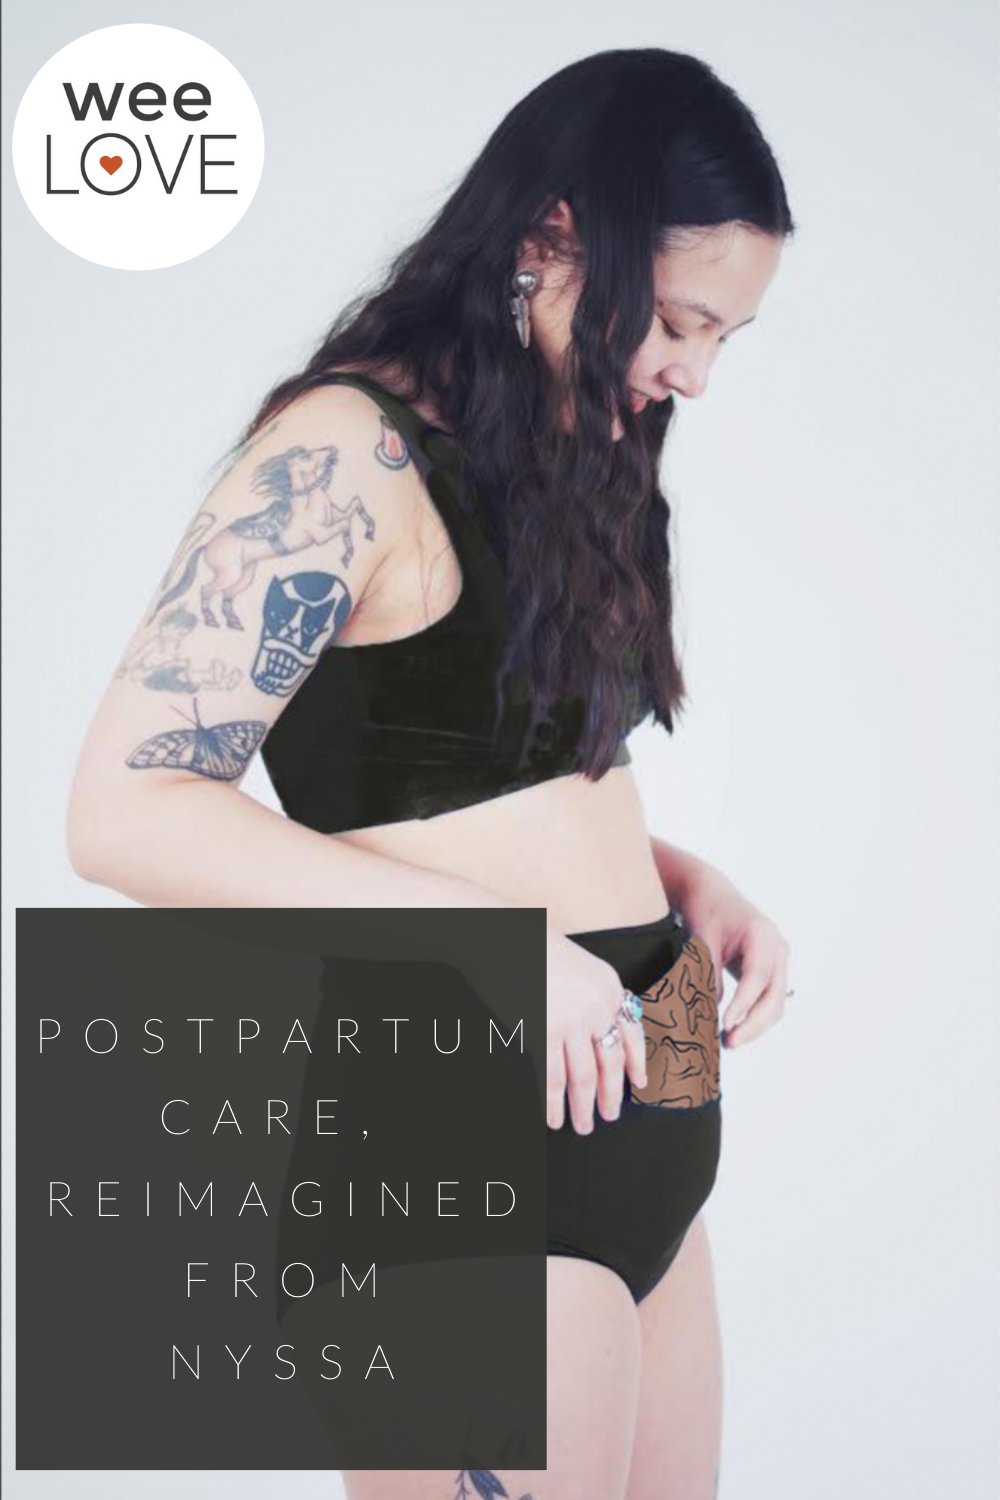 Fourthwear™ Postpartum Underwear